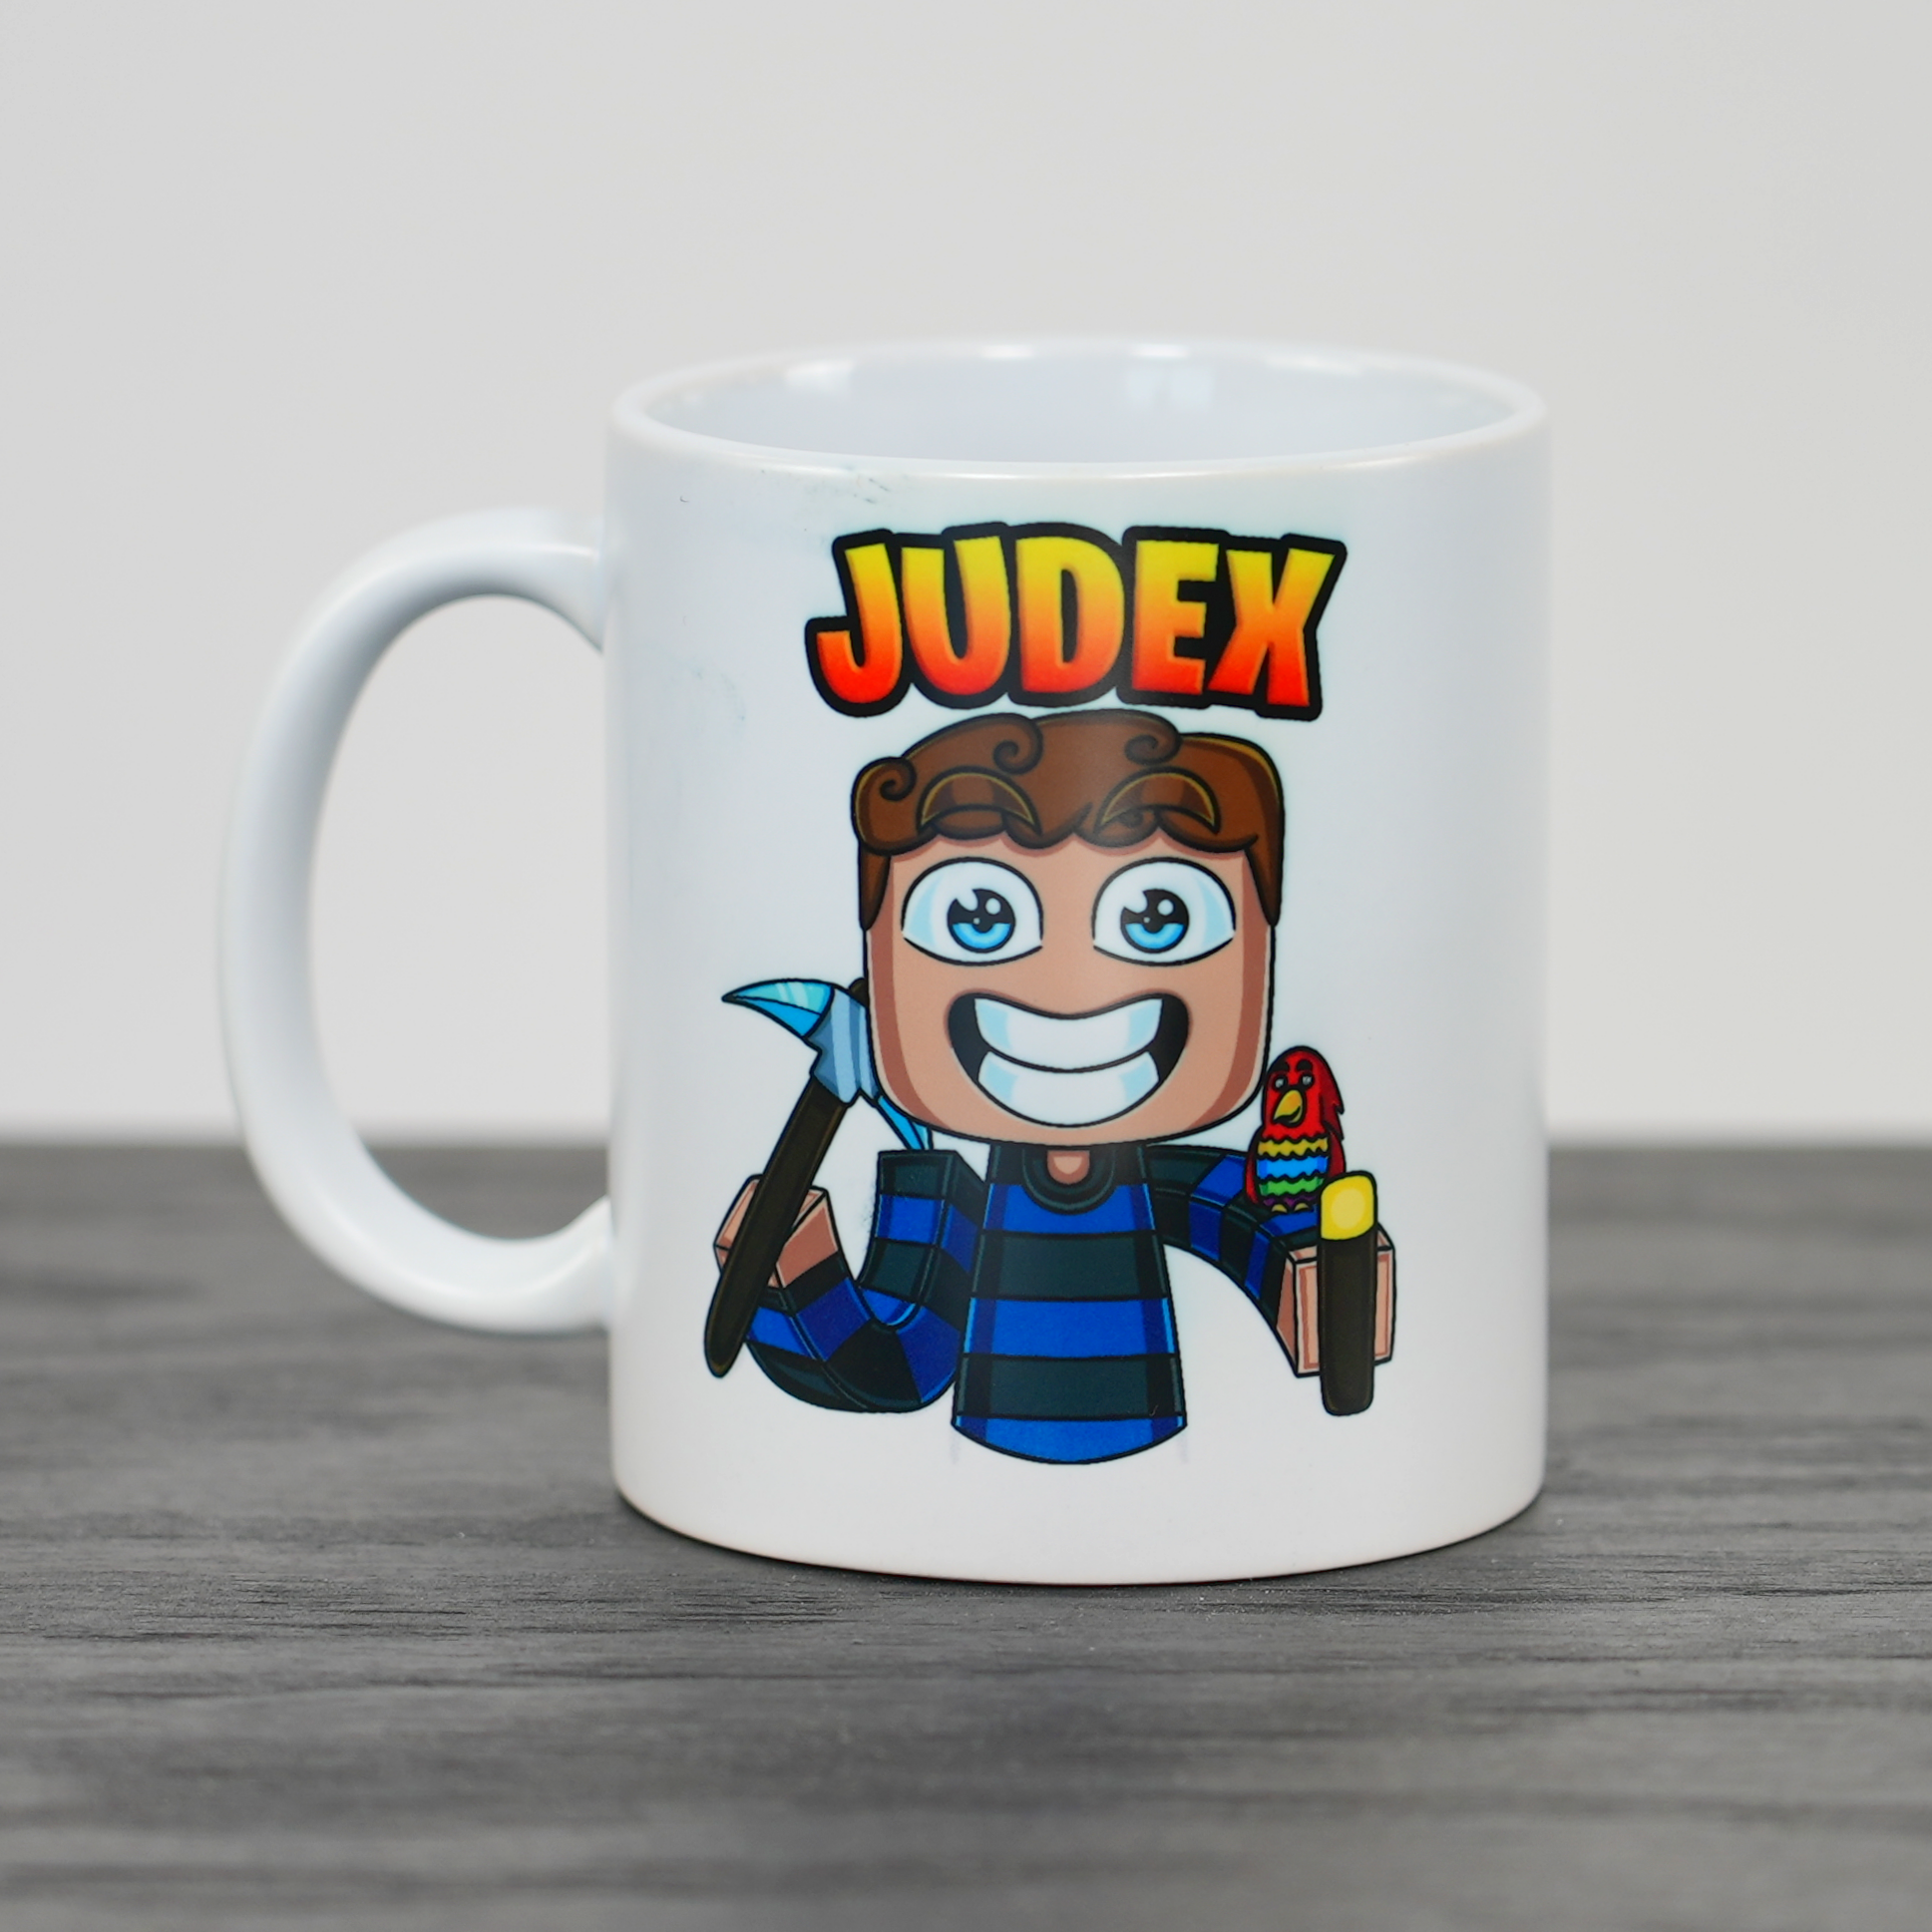 Judex Miner Cup